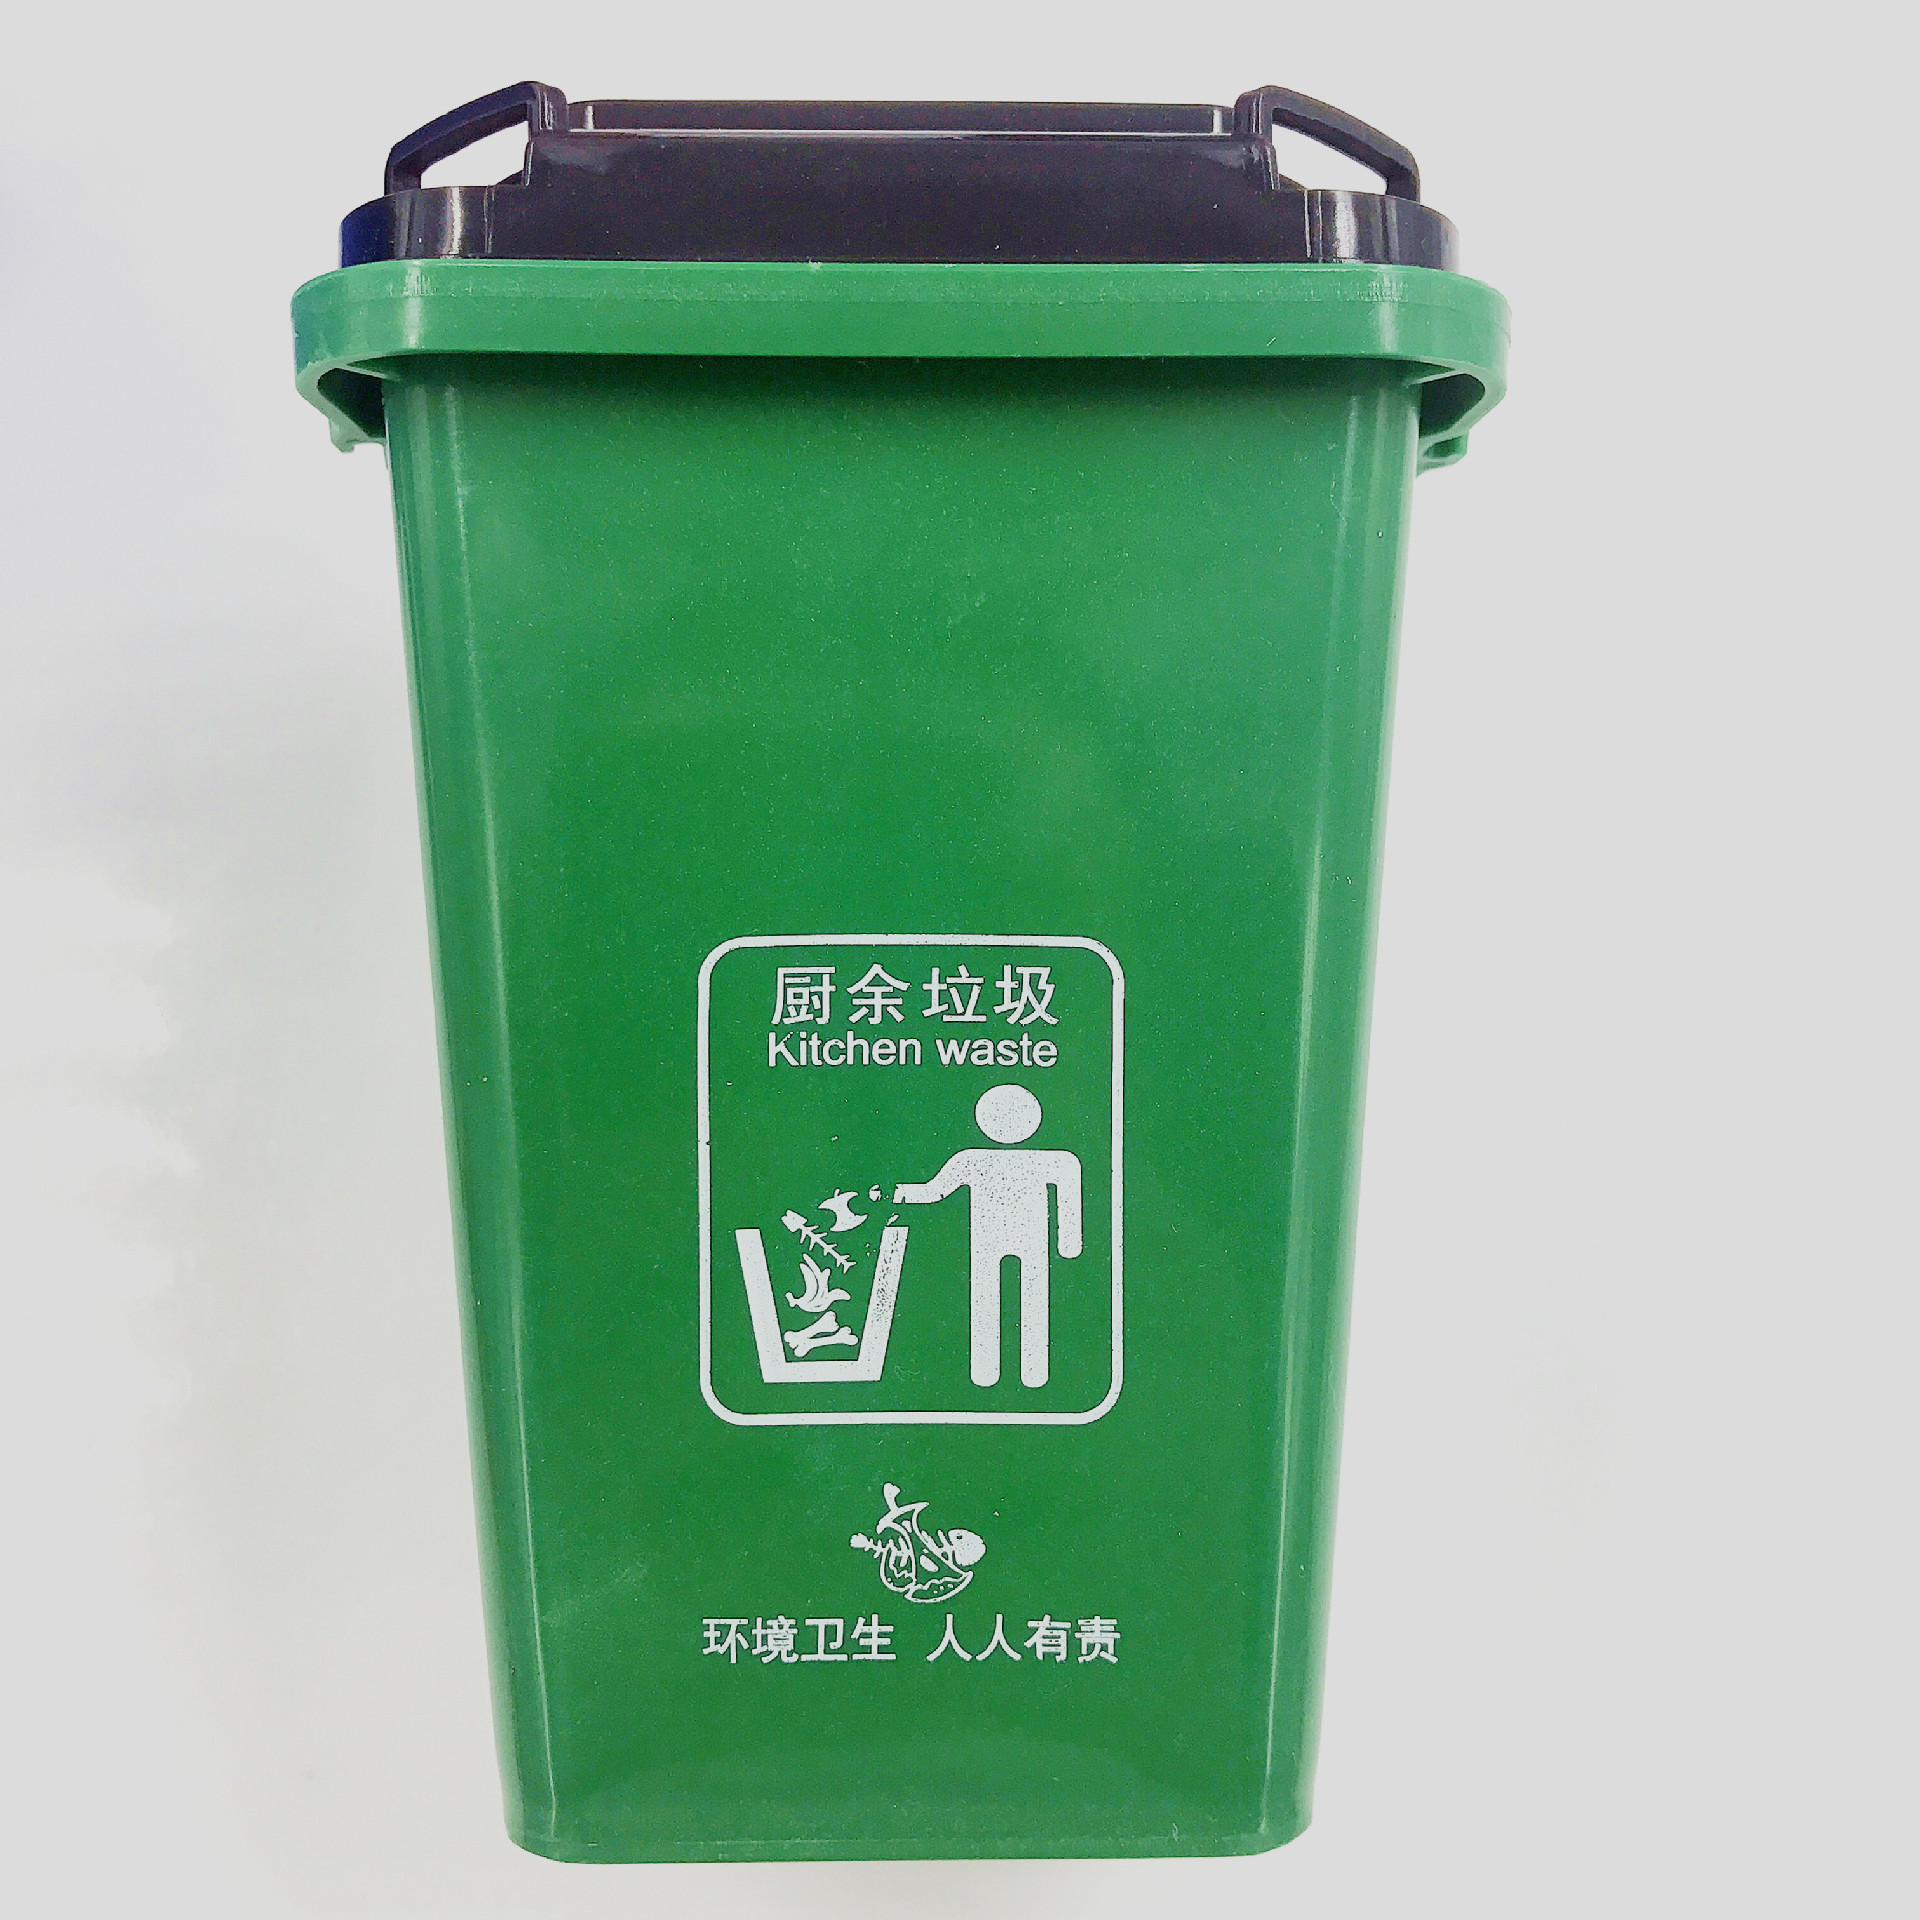 厨余垃圾桶(绿色)